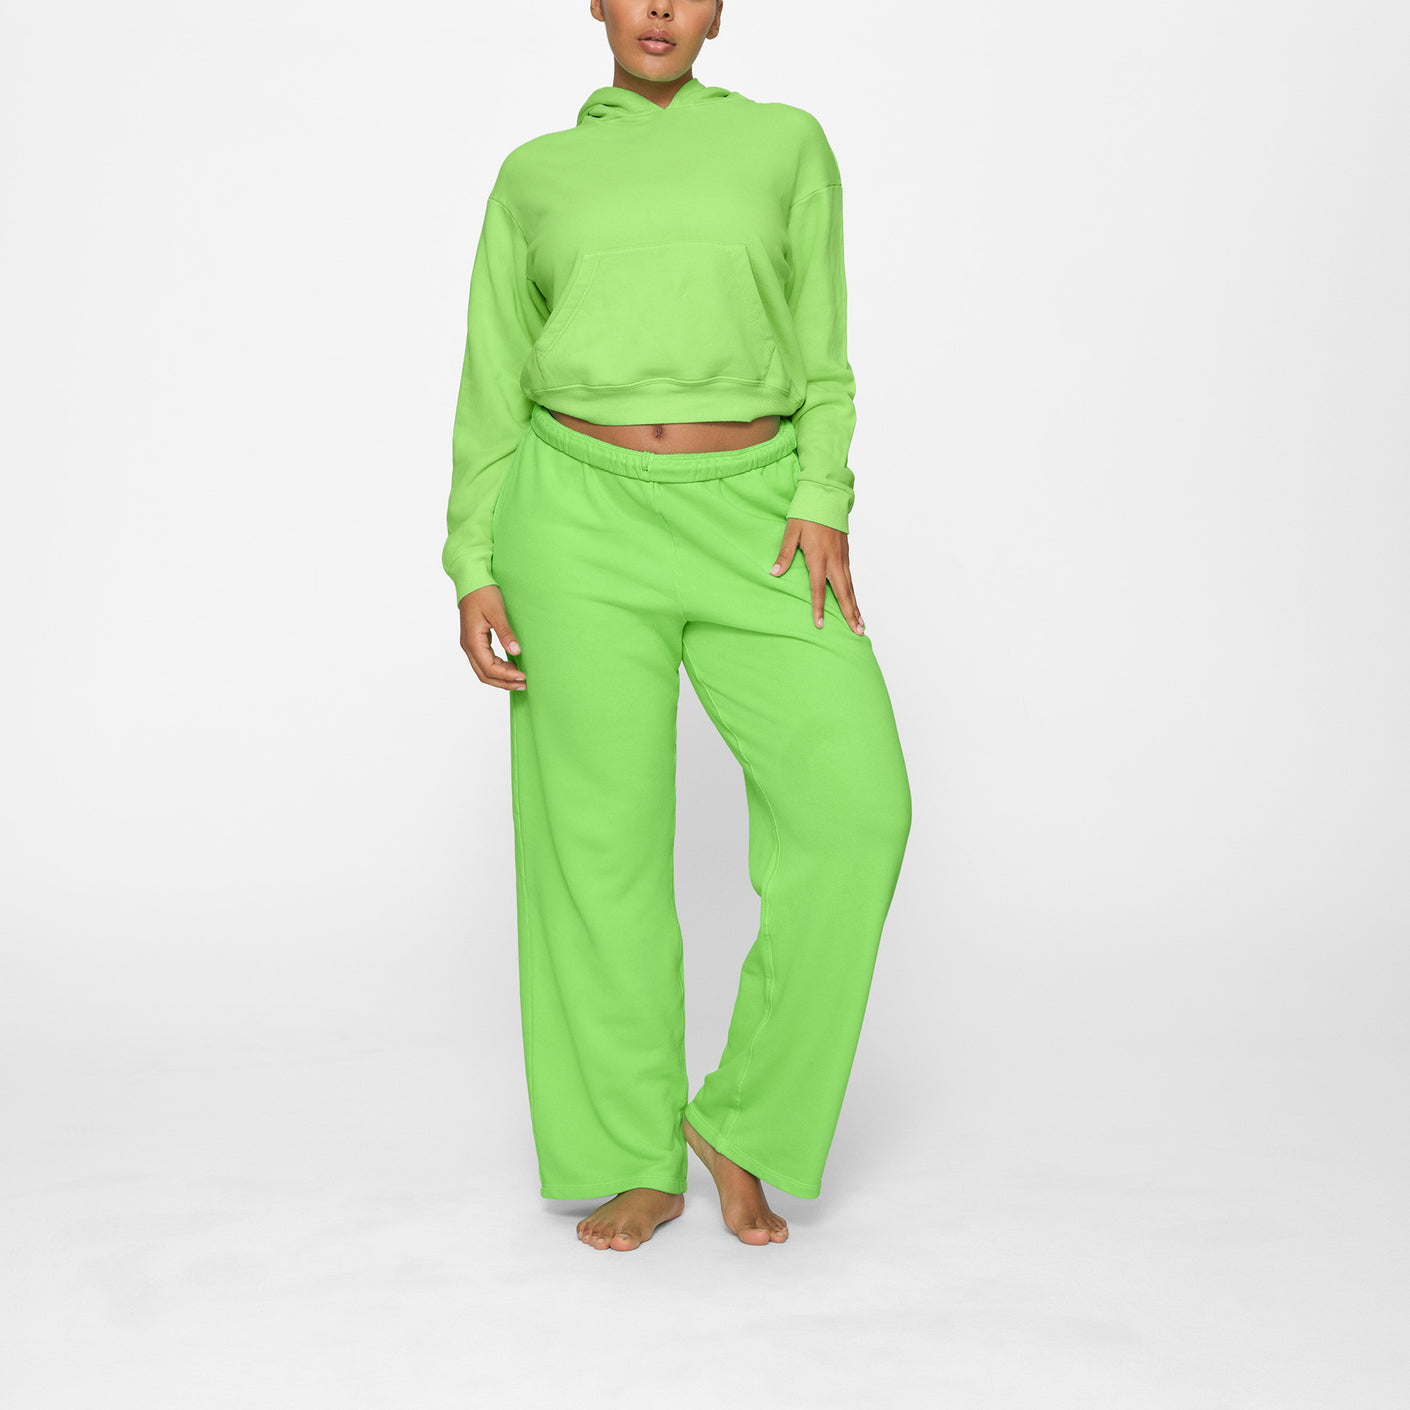 Super Soft Fleece Pullover Hooded Sweatshirt (Neon Green